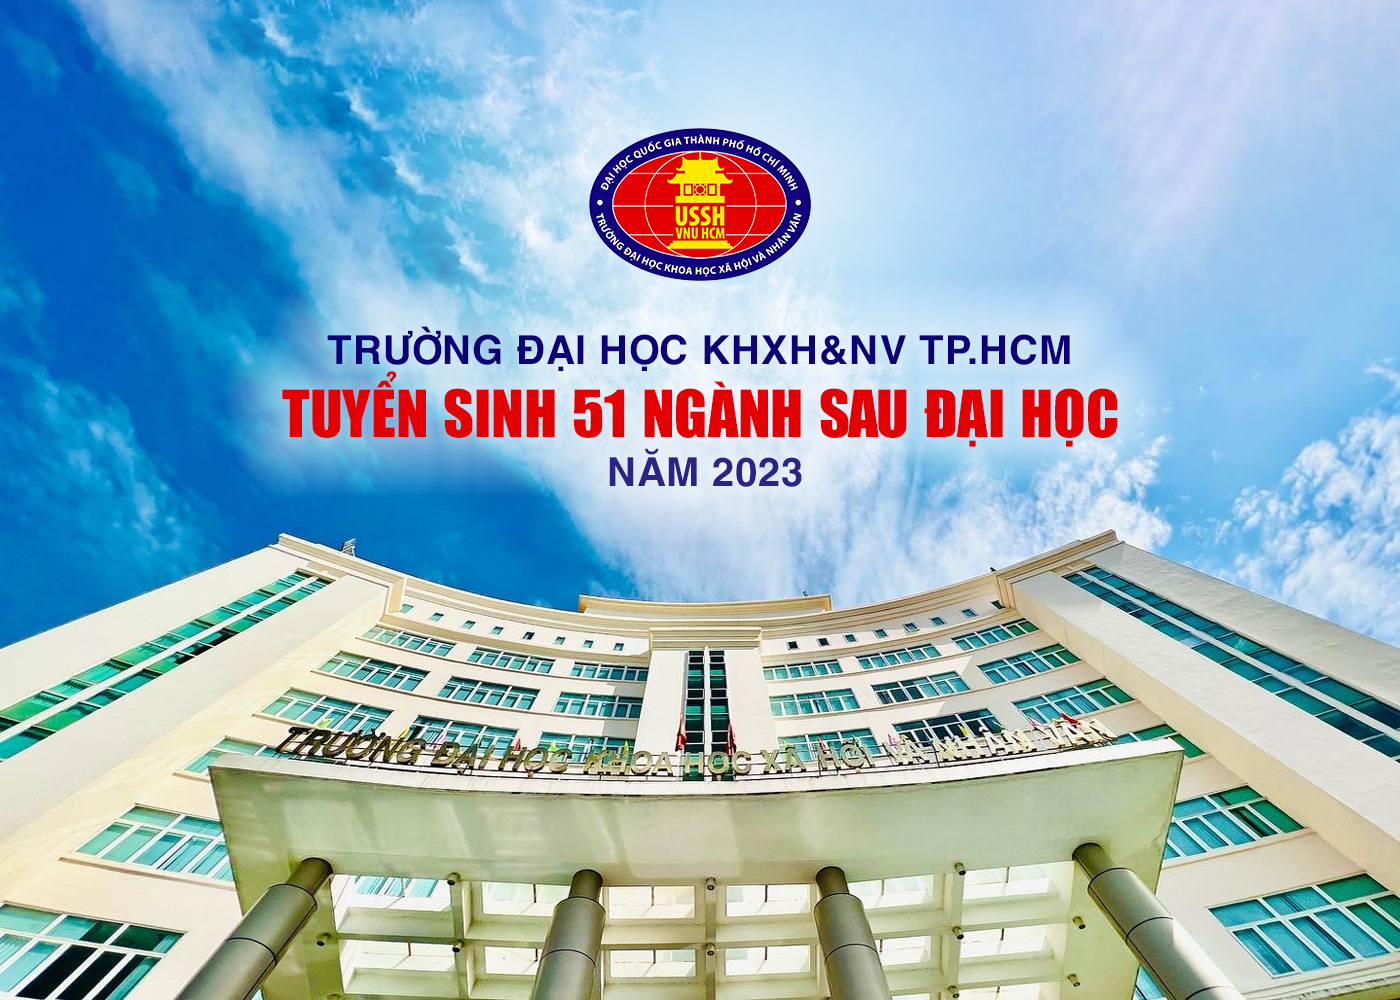 Trường Đại học KHXH&NV TP.HCM tuyển sinh 51 ngành sau đại học năm 2023 - Ảnh 1